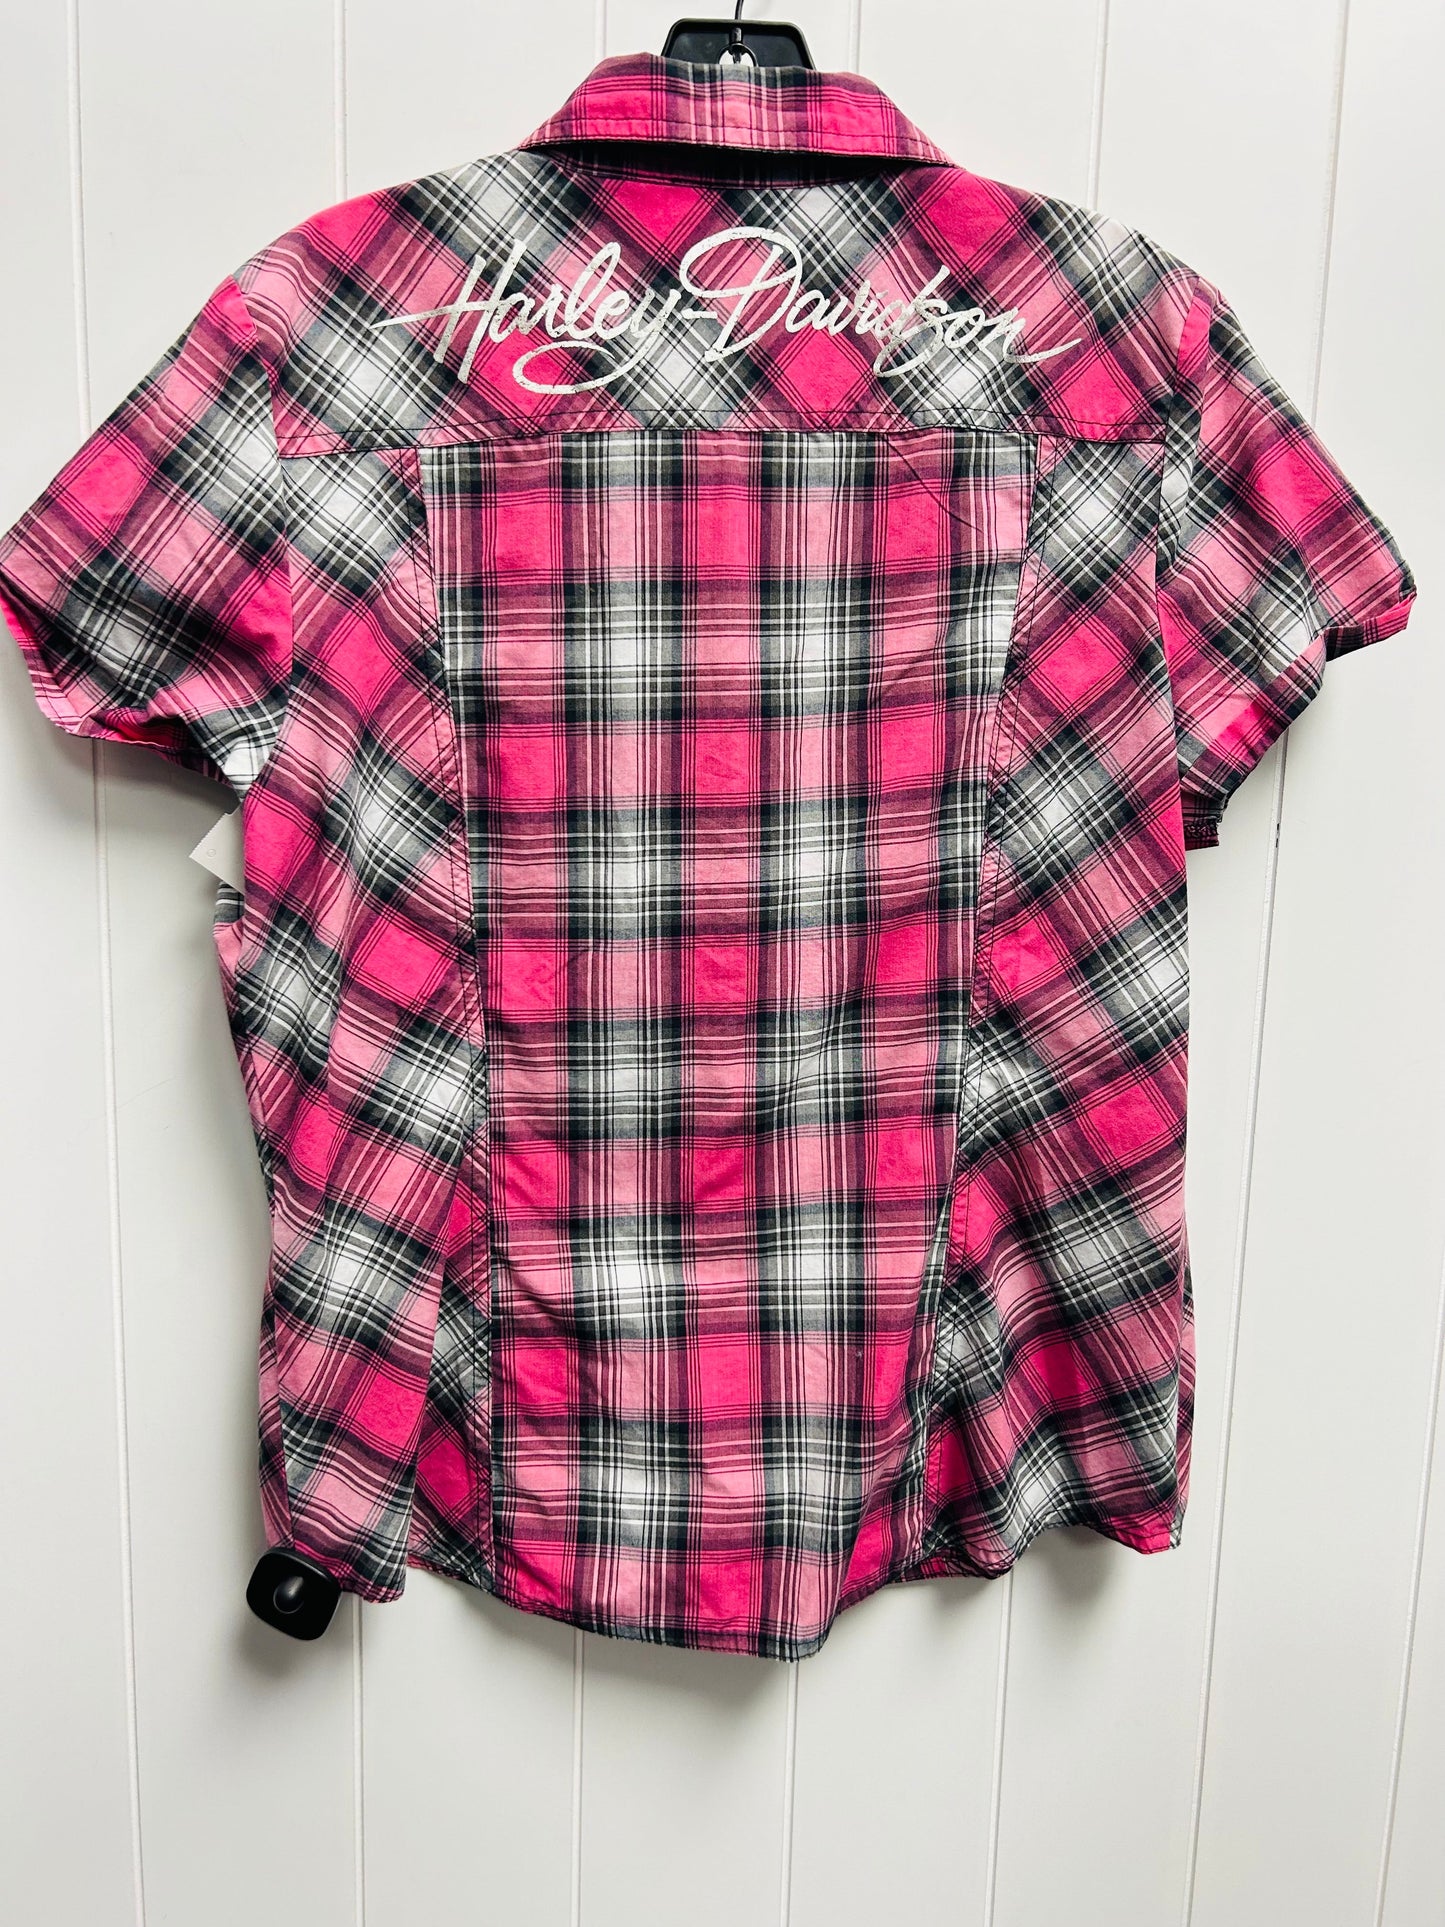 Black & Pink Top Short Sleeve Harley Davidson, Size L